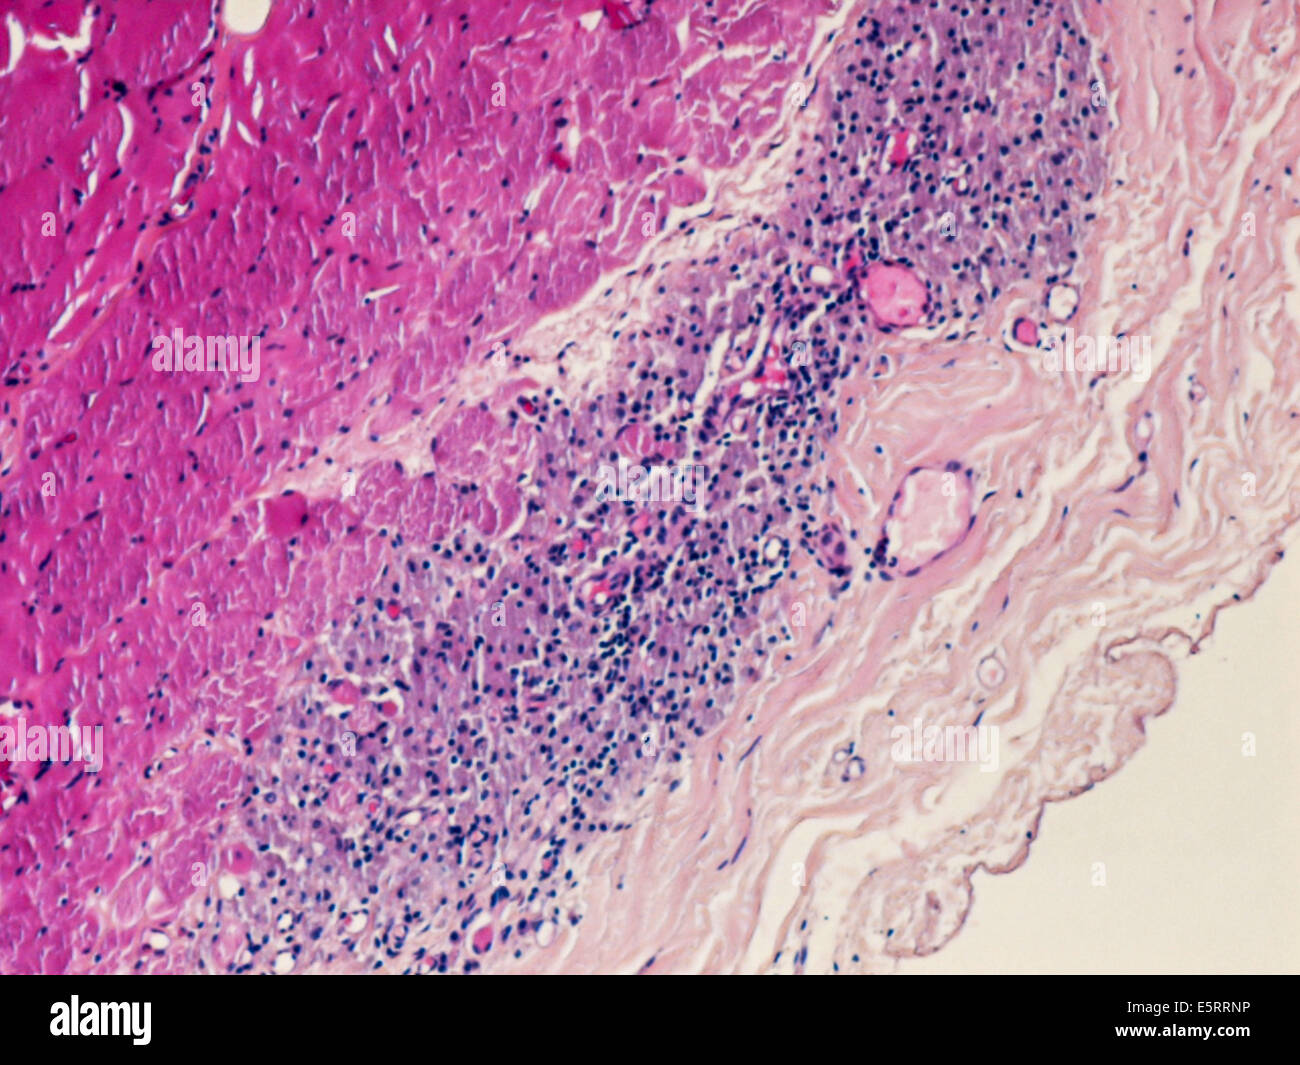 Leichte Schliffbild eines Abschnitts durch Gewebe aus einem Musculus deltoideus Biopsie zeigt eine macrophagic Myofasciitis nach der Impfung. Stockfoto